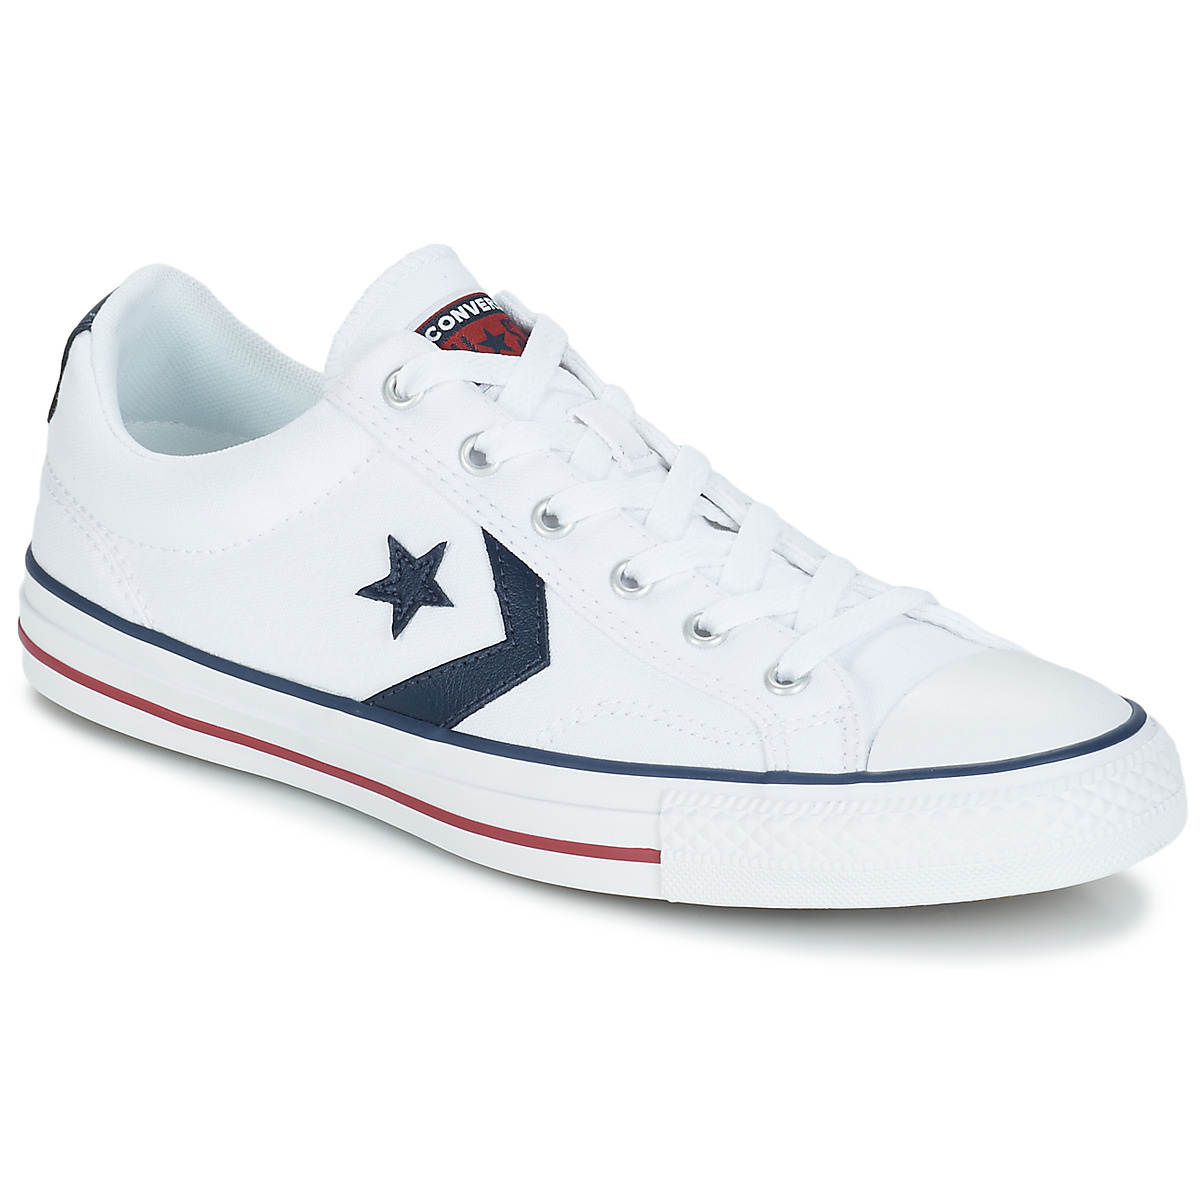 Zapatos Zapatillas bajas Converse STAR PLAYER  OX Blanco